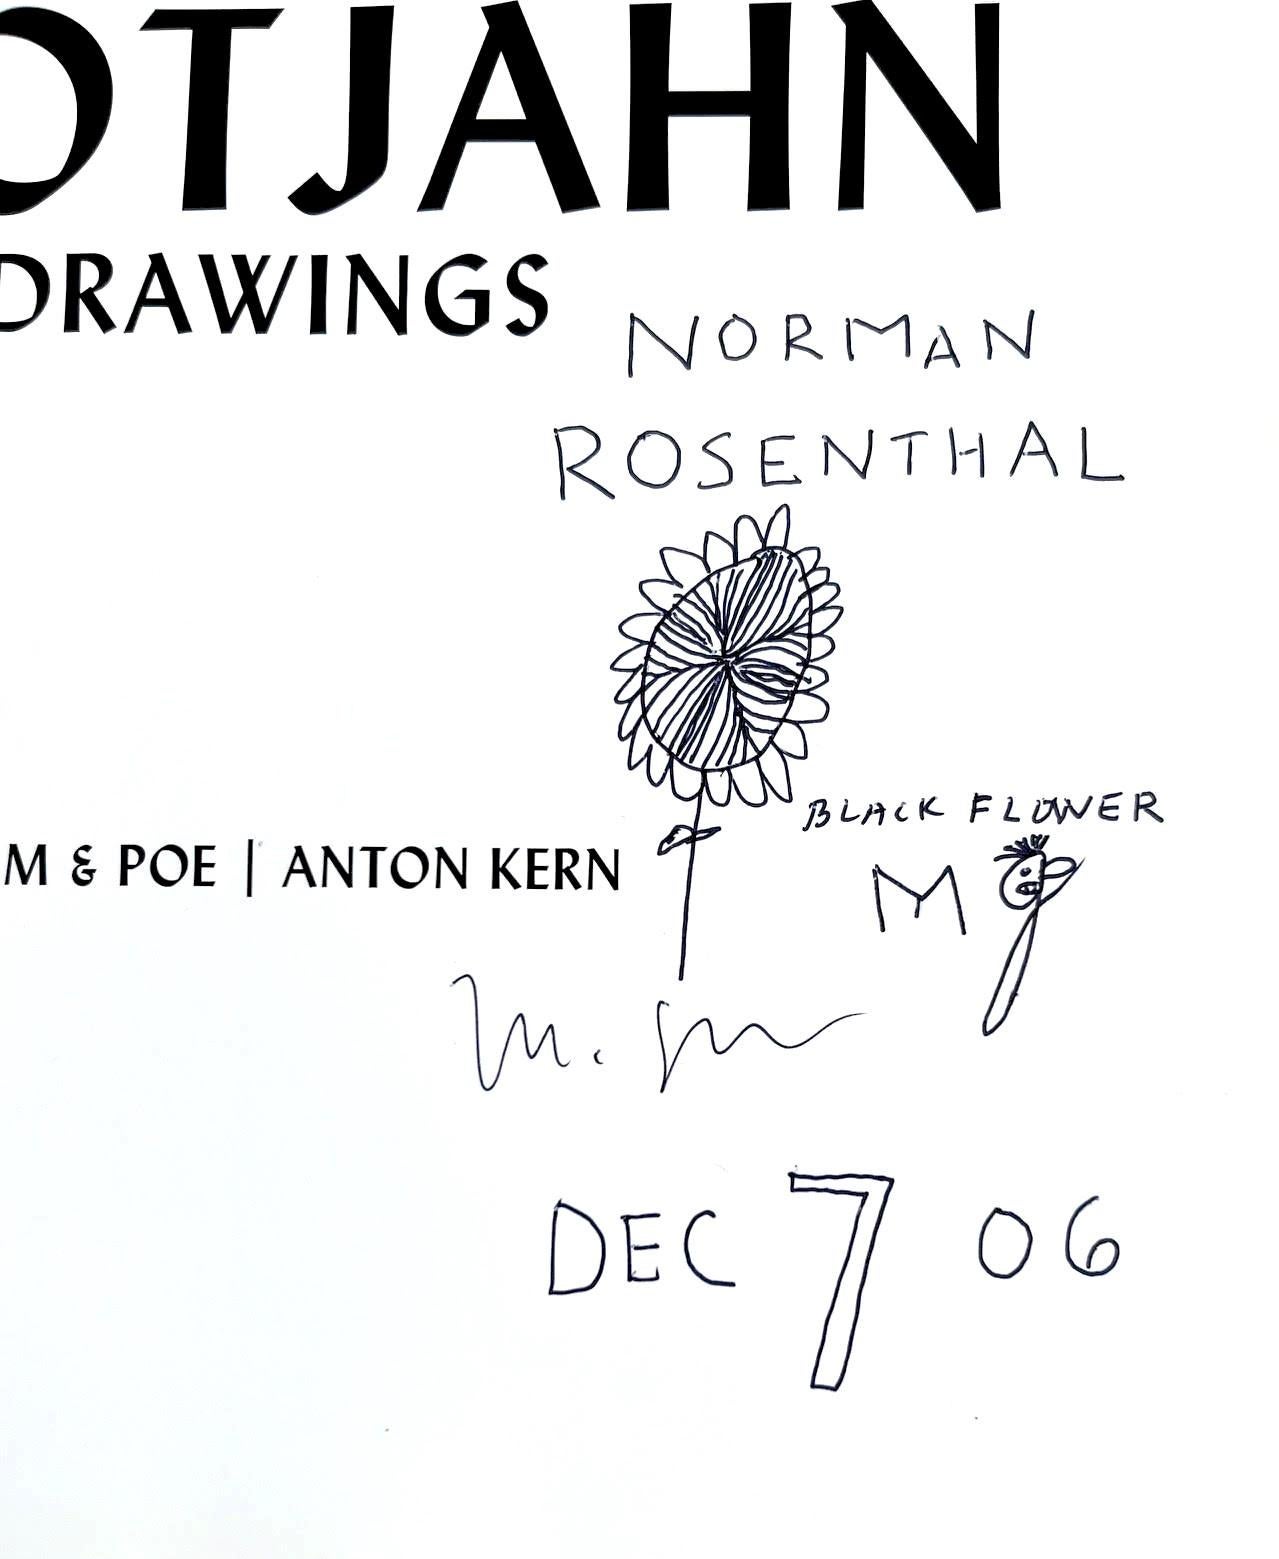 Dessin de fleur signé dans la monographie, dédicacé à l'historien de l'art Norman Rosenthal. - Contemporain Art par Mark Grotjahn 